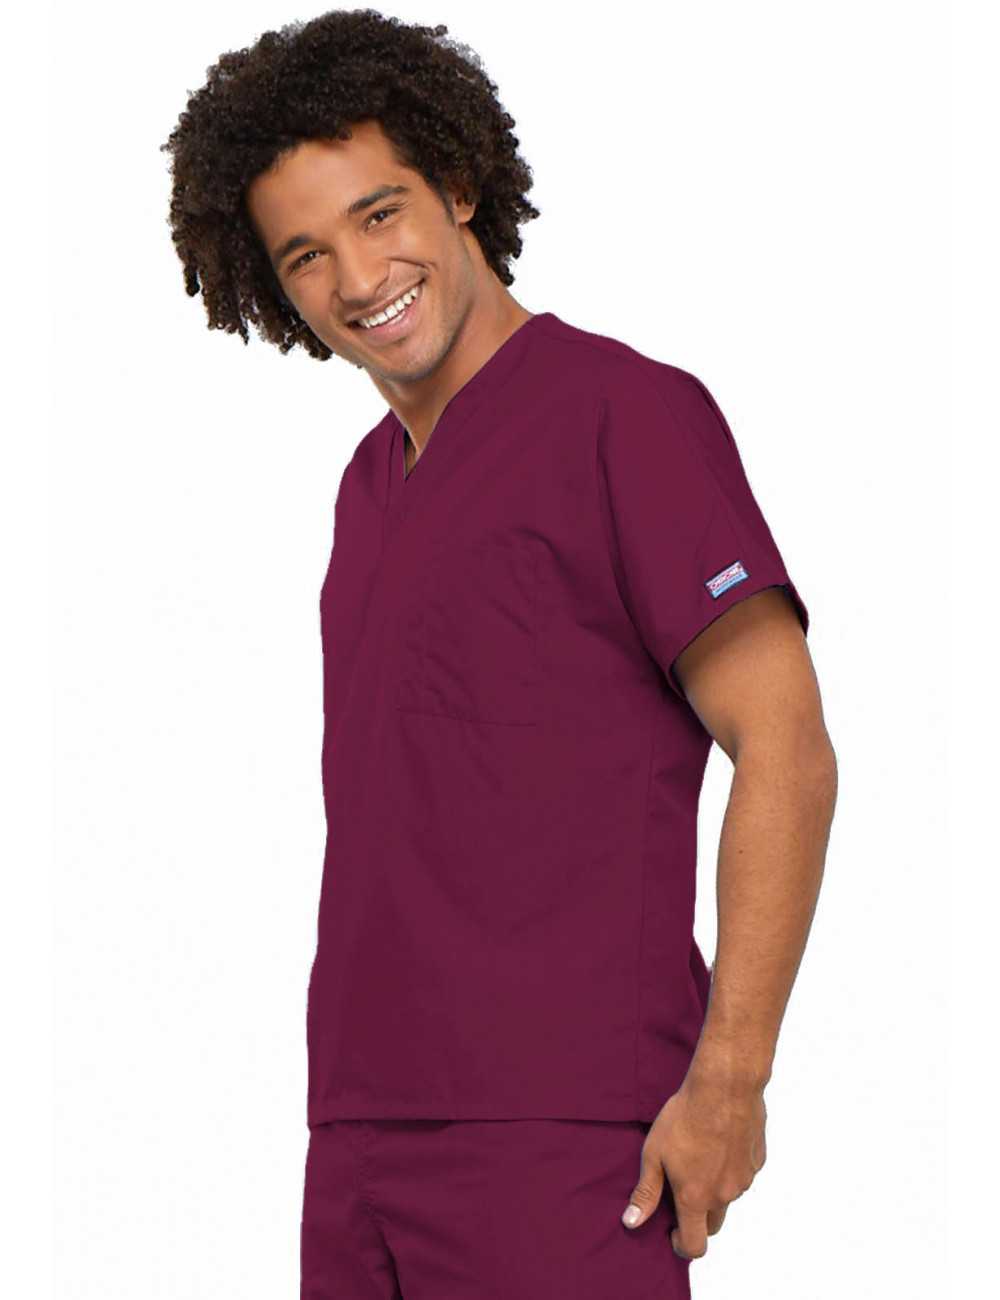 Men's Medical Gown, 1 pocket, Cherokee Workwear Originals (4777)